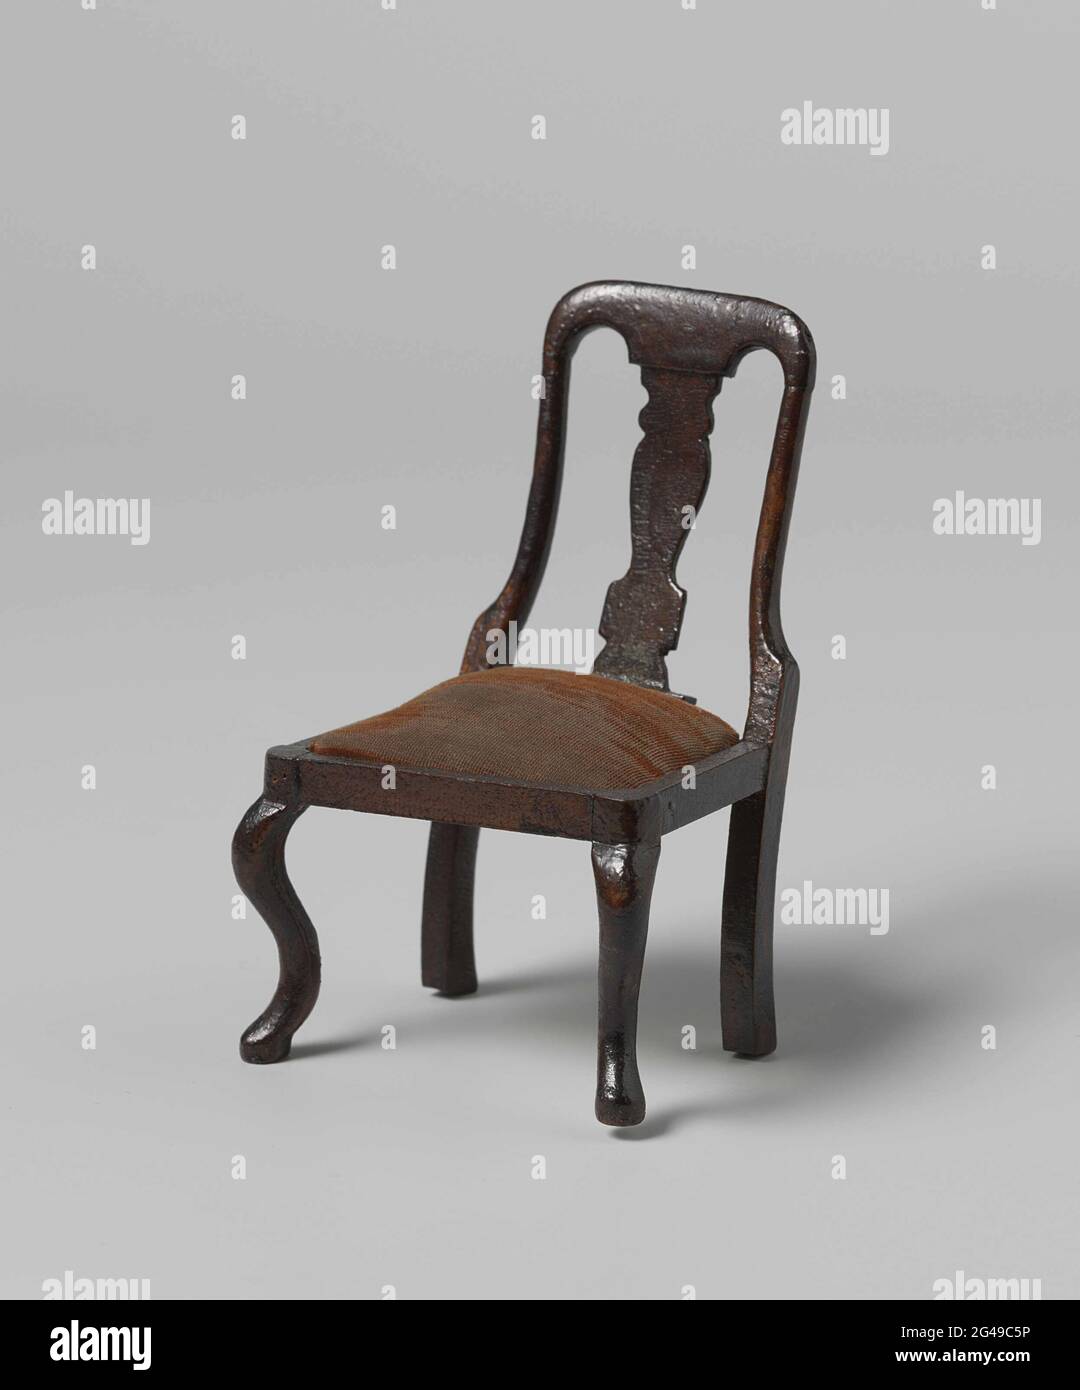 Sedia, schienale con foglia centrale a forma di vaso, sedile con velluto di  borgogna. Sedia di mogano. La parte posteriore è aperta con una foglia  centrale a forma di vaso. La sedia